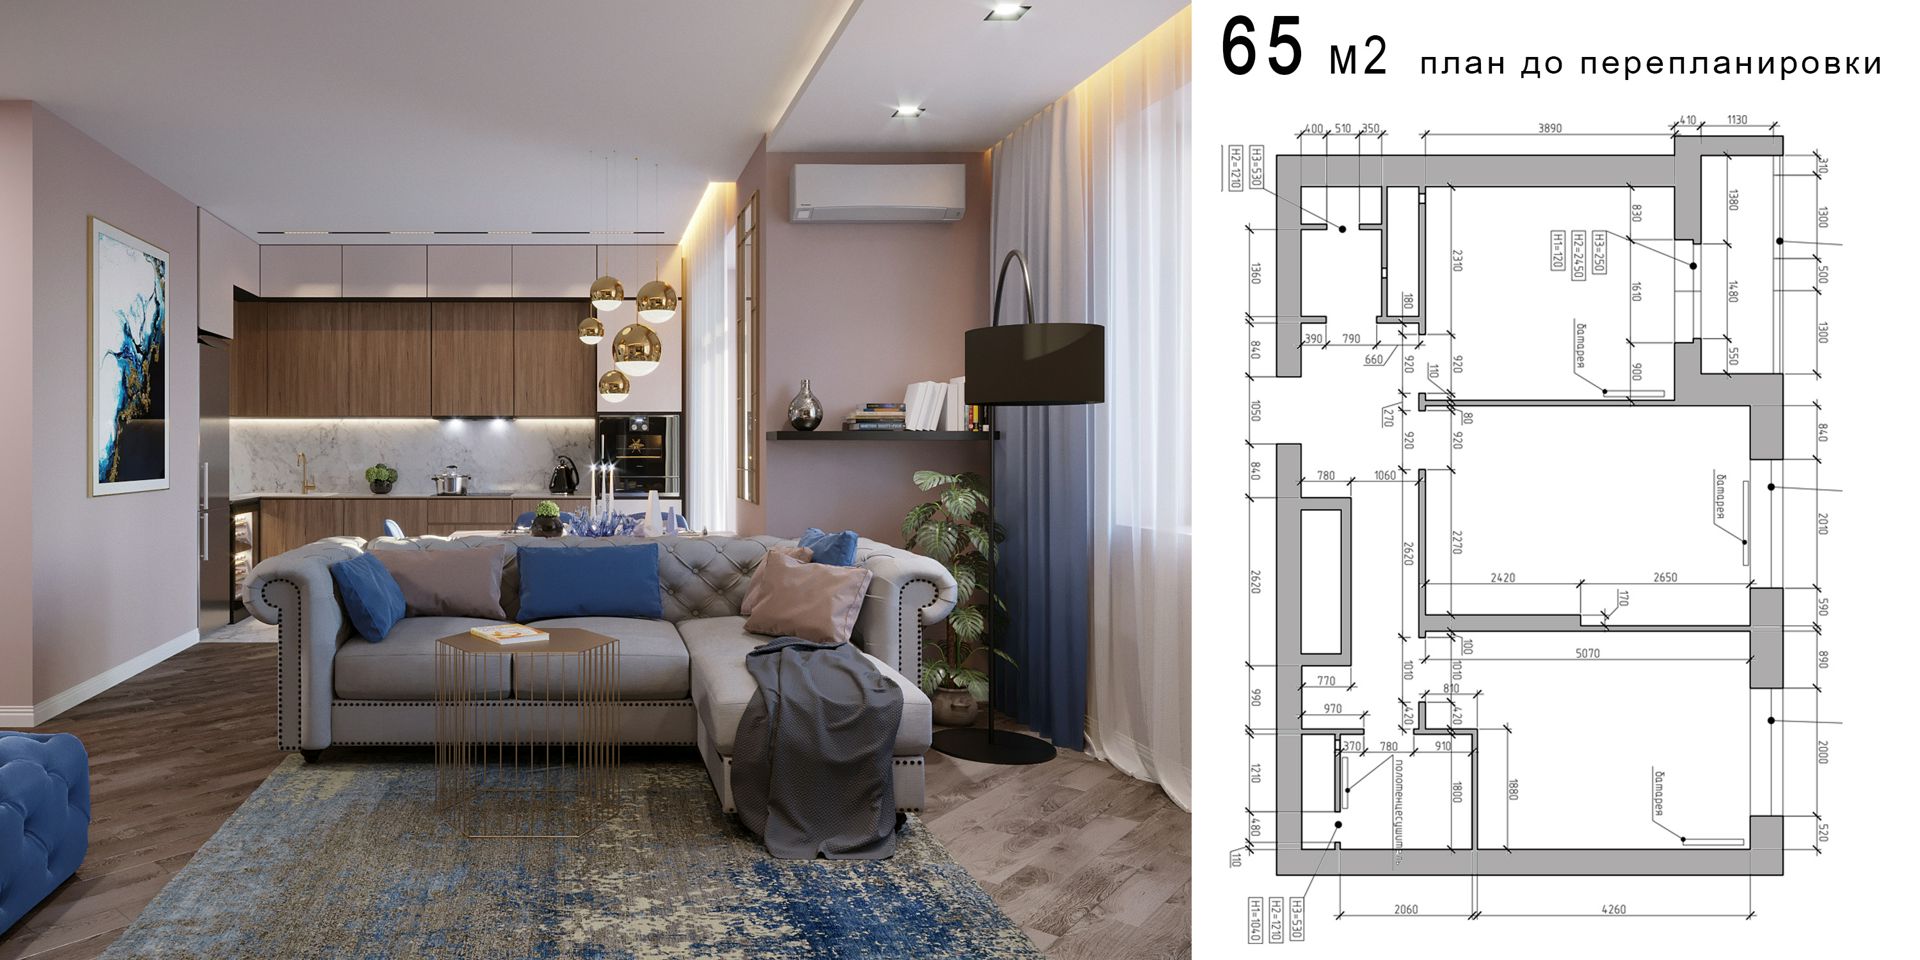 Дизайн проект интерьера типовой 2х комнатной квартиры 65м2 с чертежами и товарной ведомостью